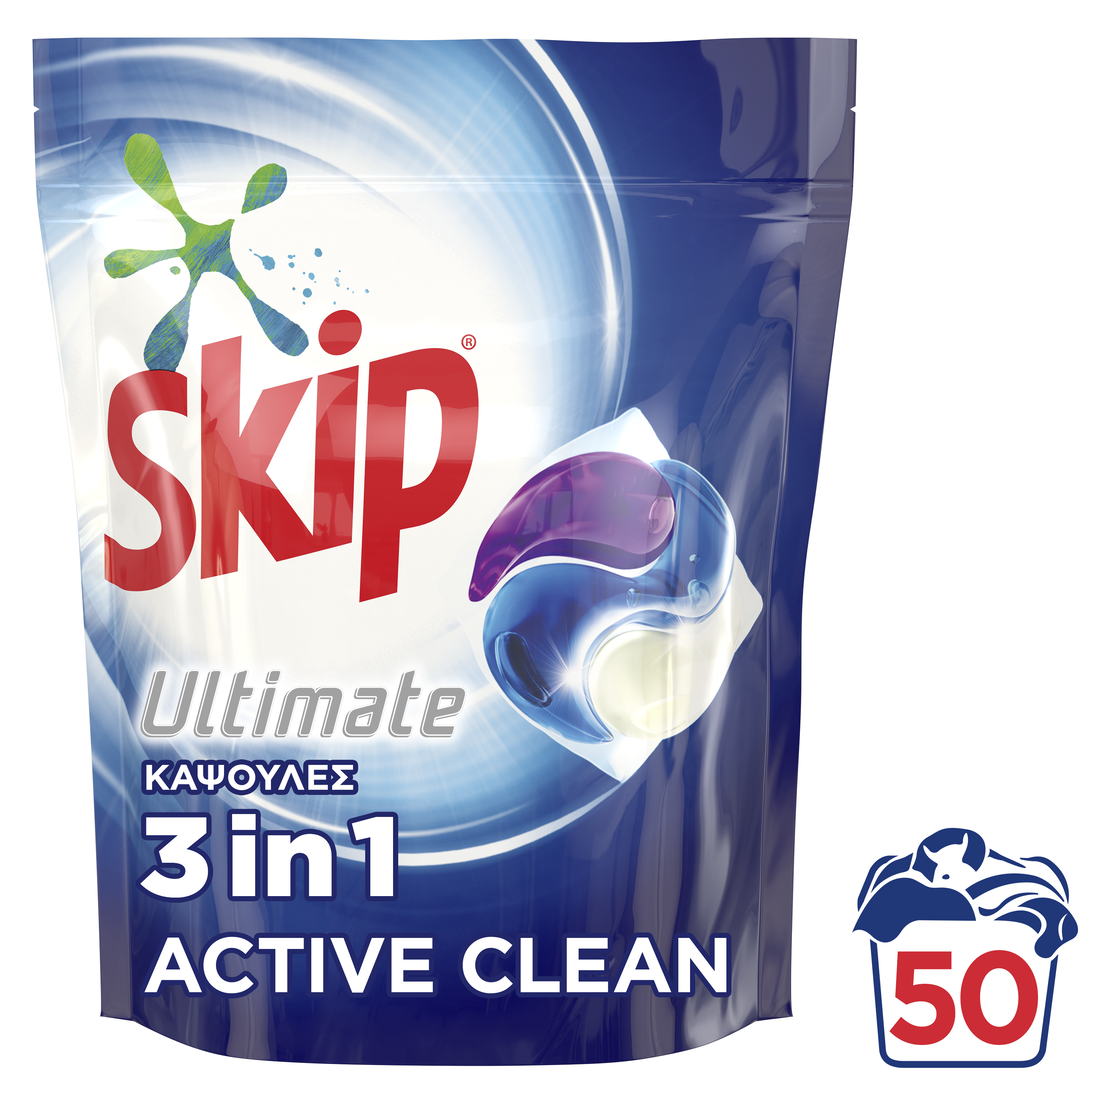 Skip - 108 lavages - Capsules 3-en-1 SKIP Lessive Hygiène (Lot de 3x36)